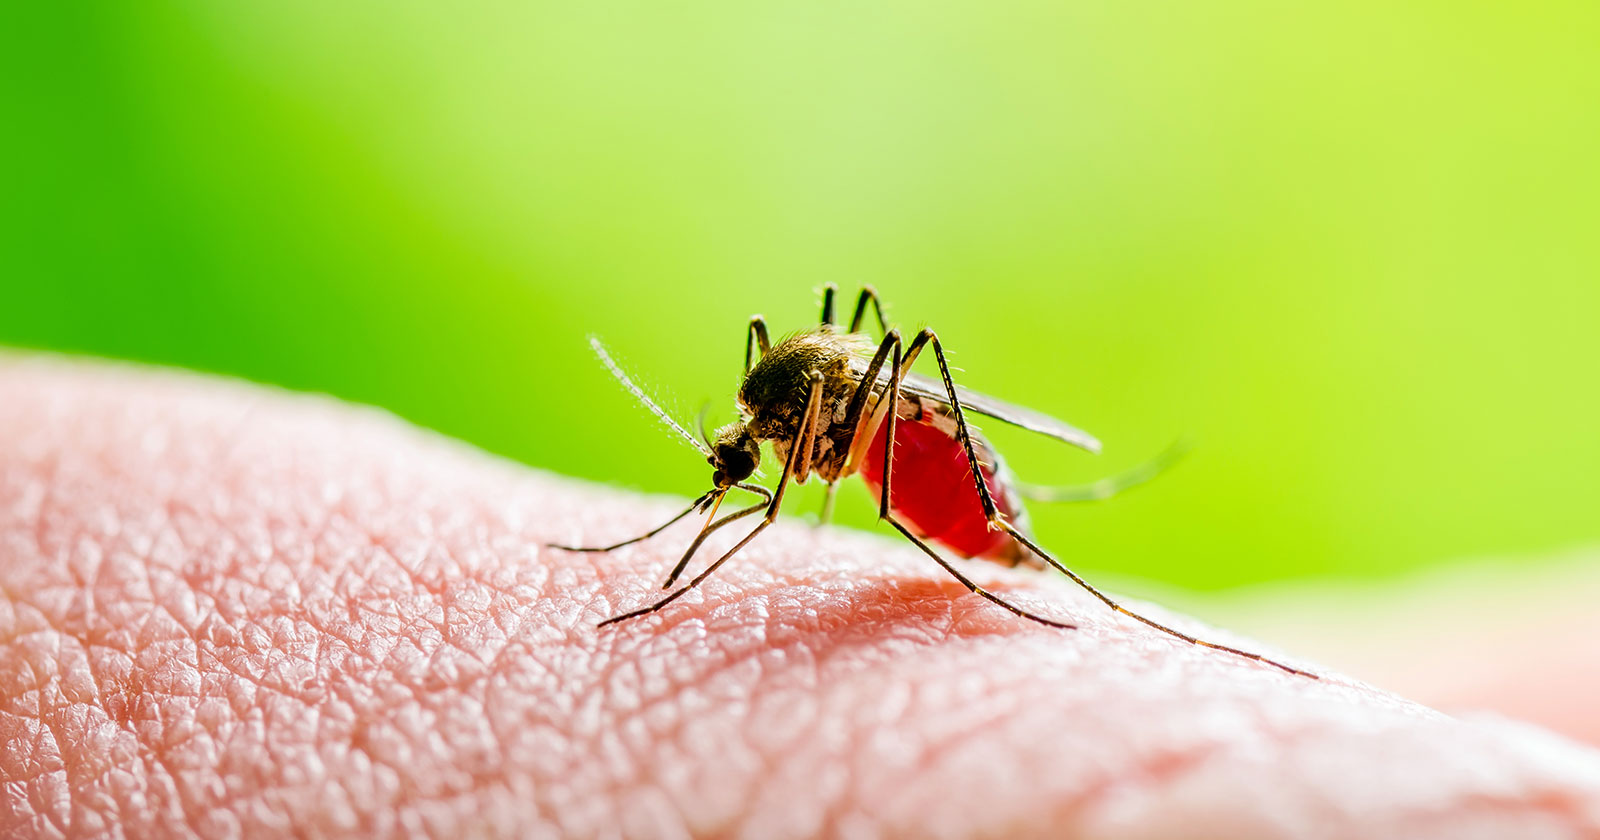 dengue Fever mosquito